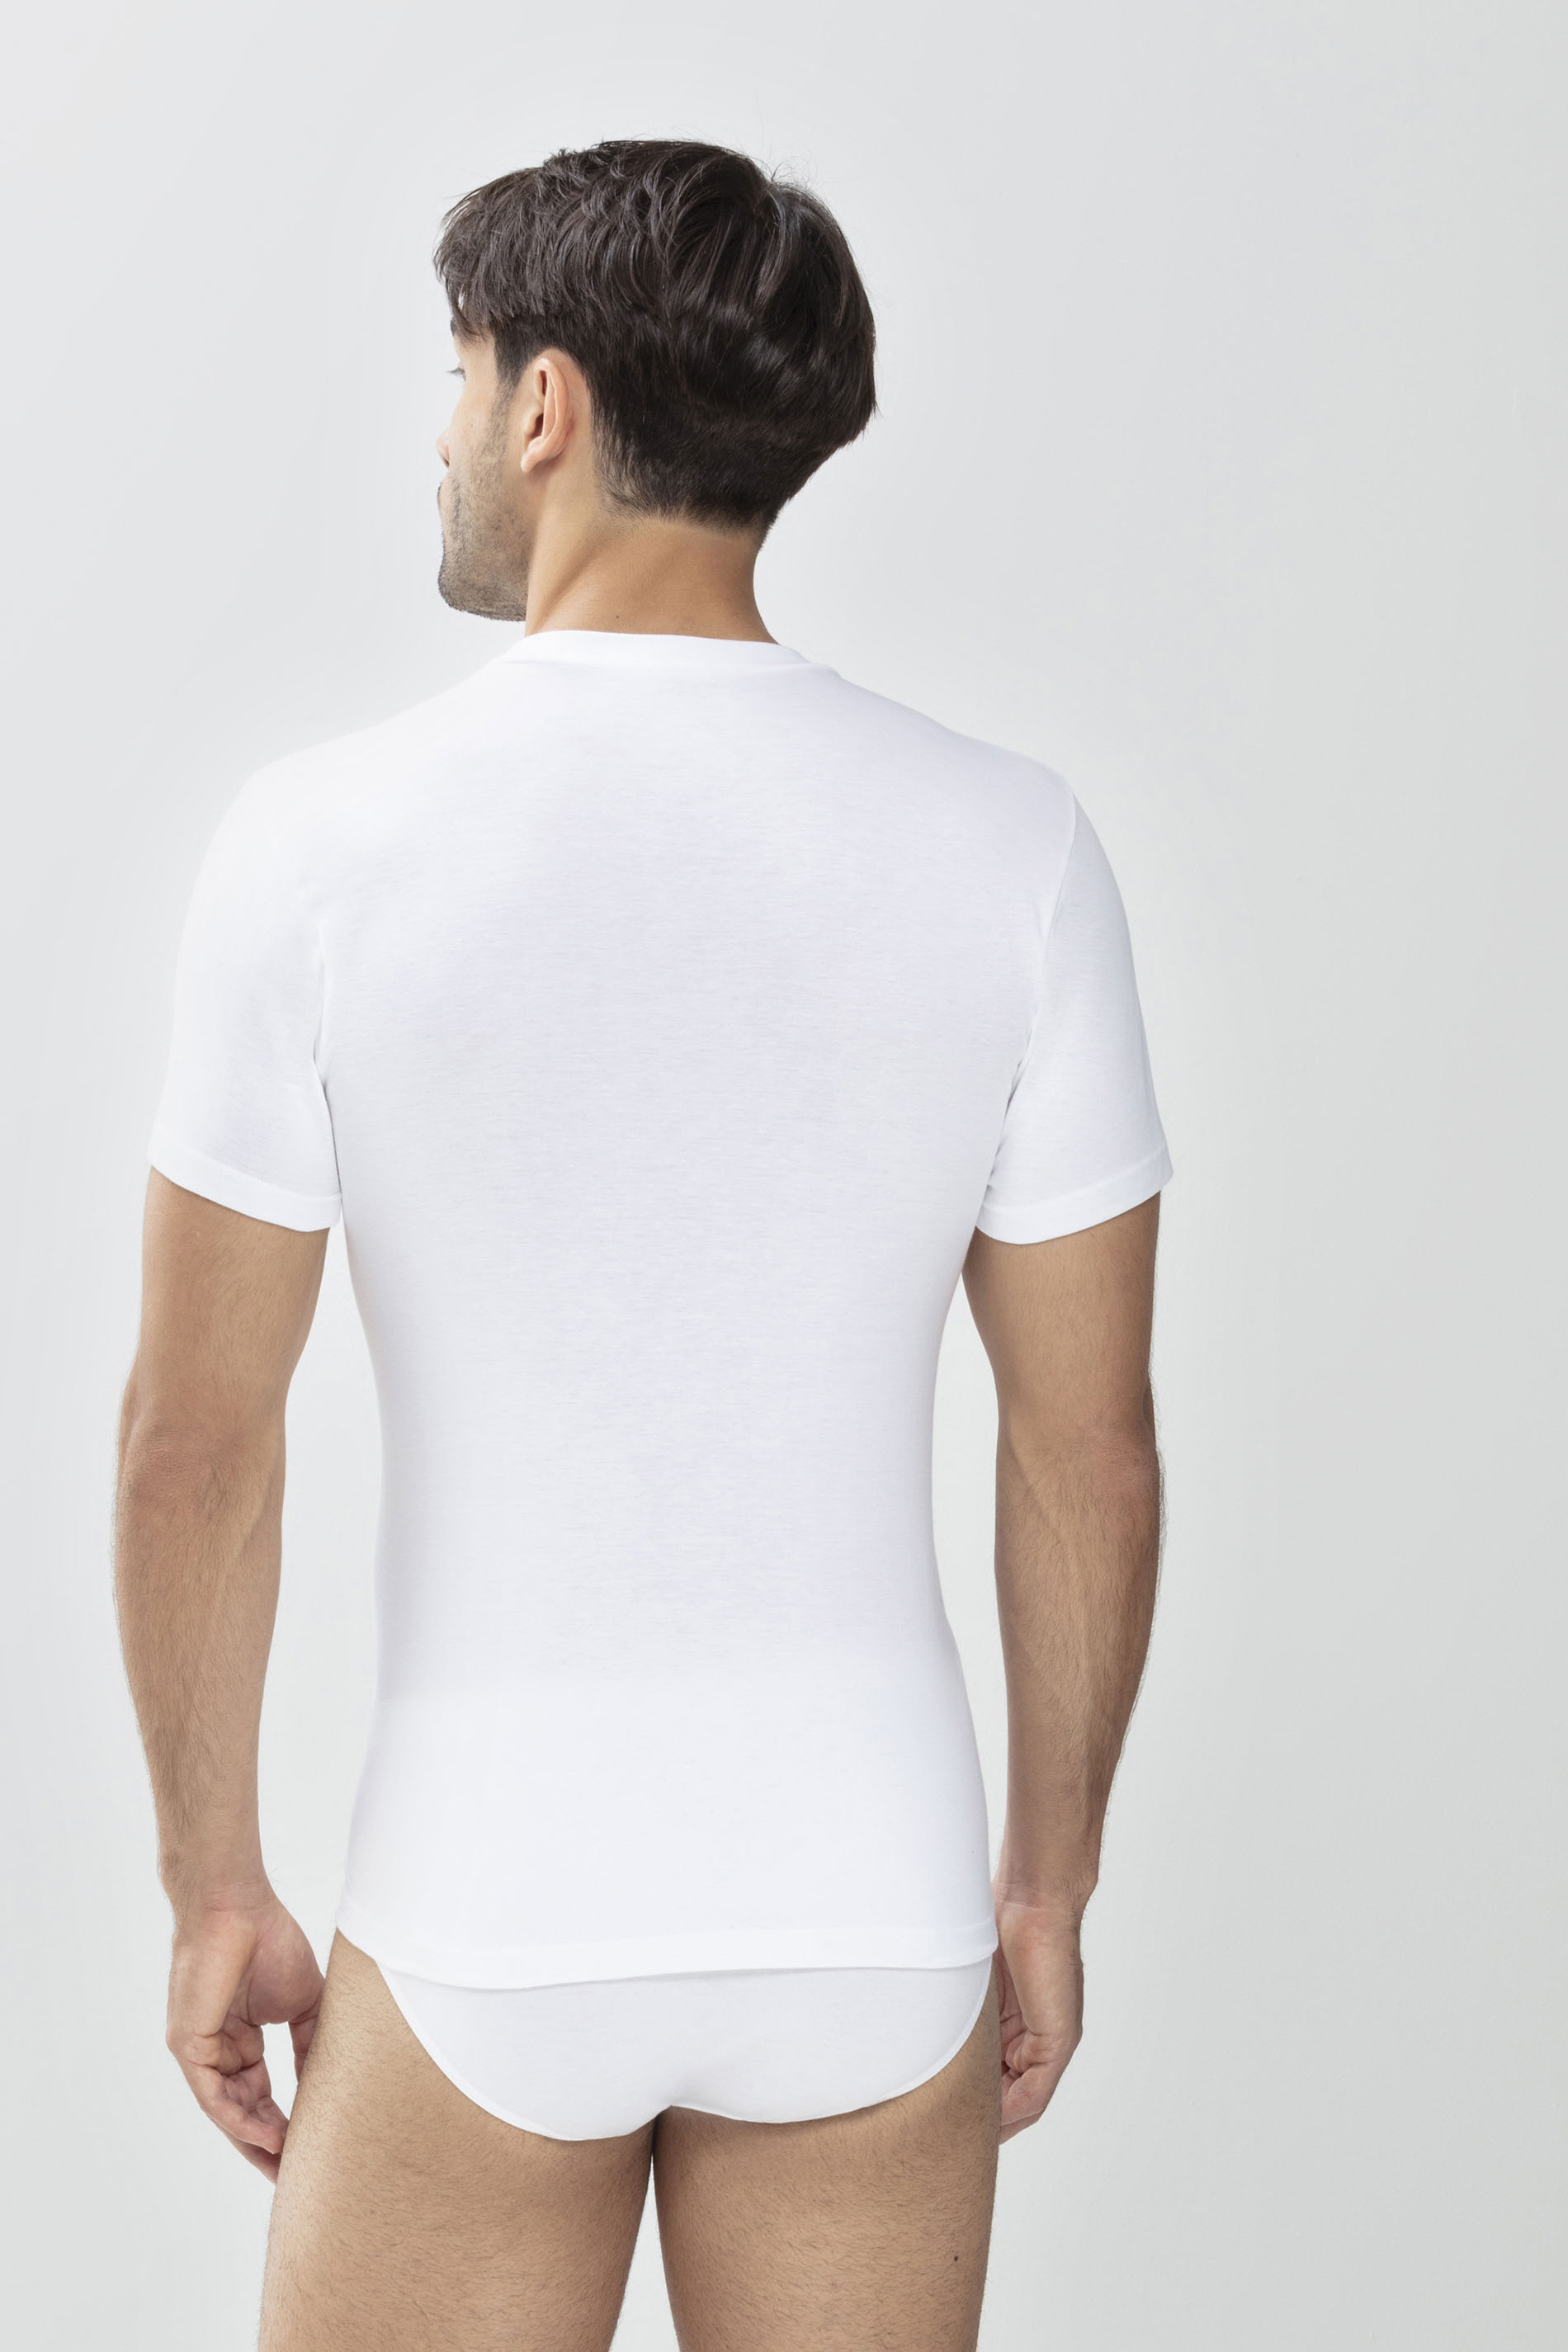 Olympia-Shirt Weiss Serie Noblesse Rückansicht | mey®